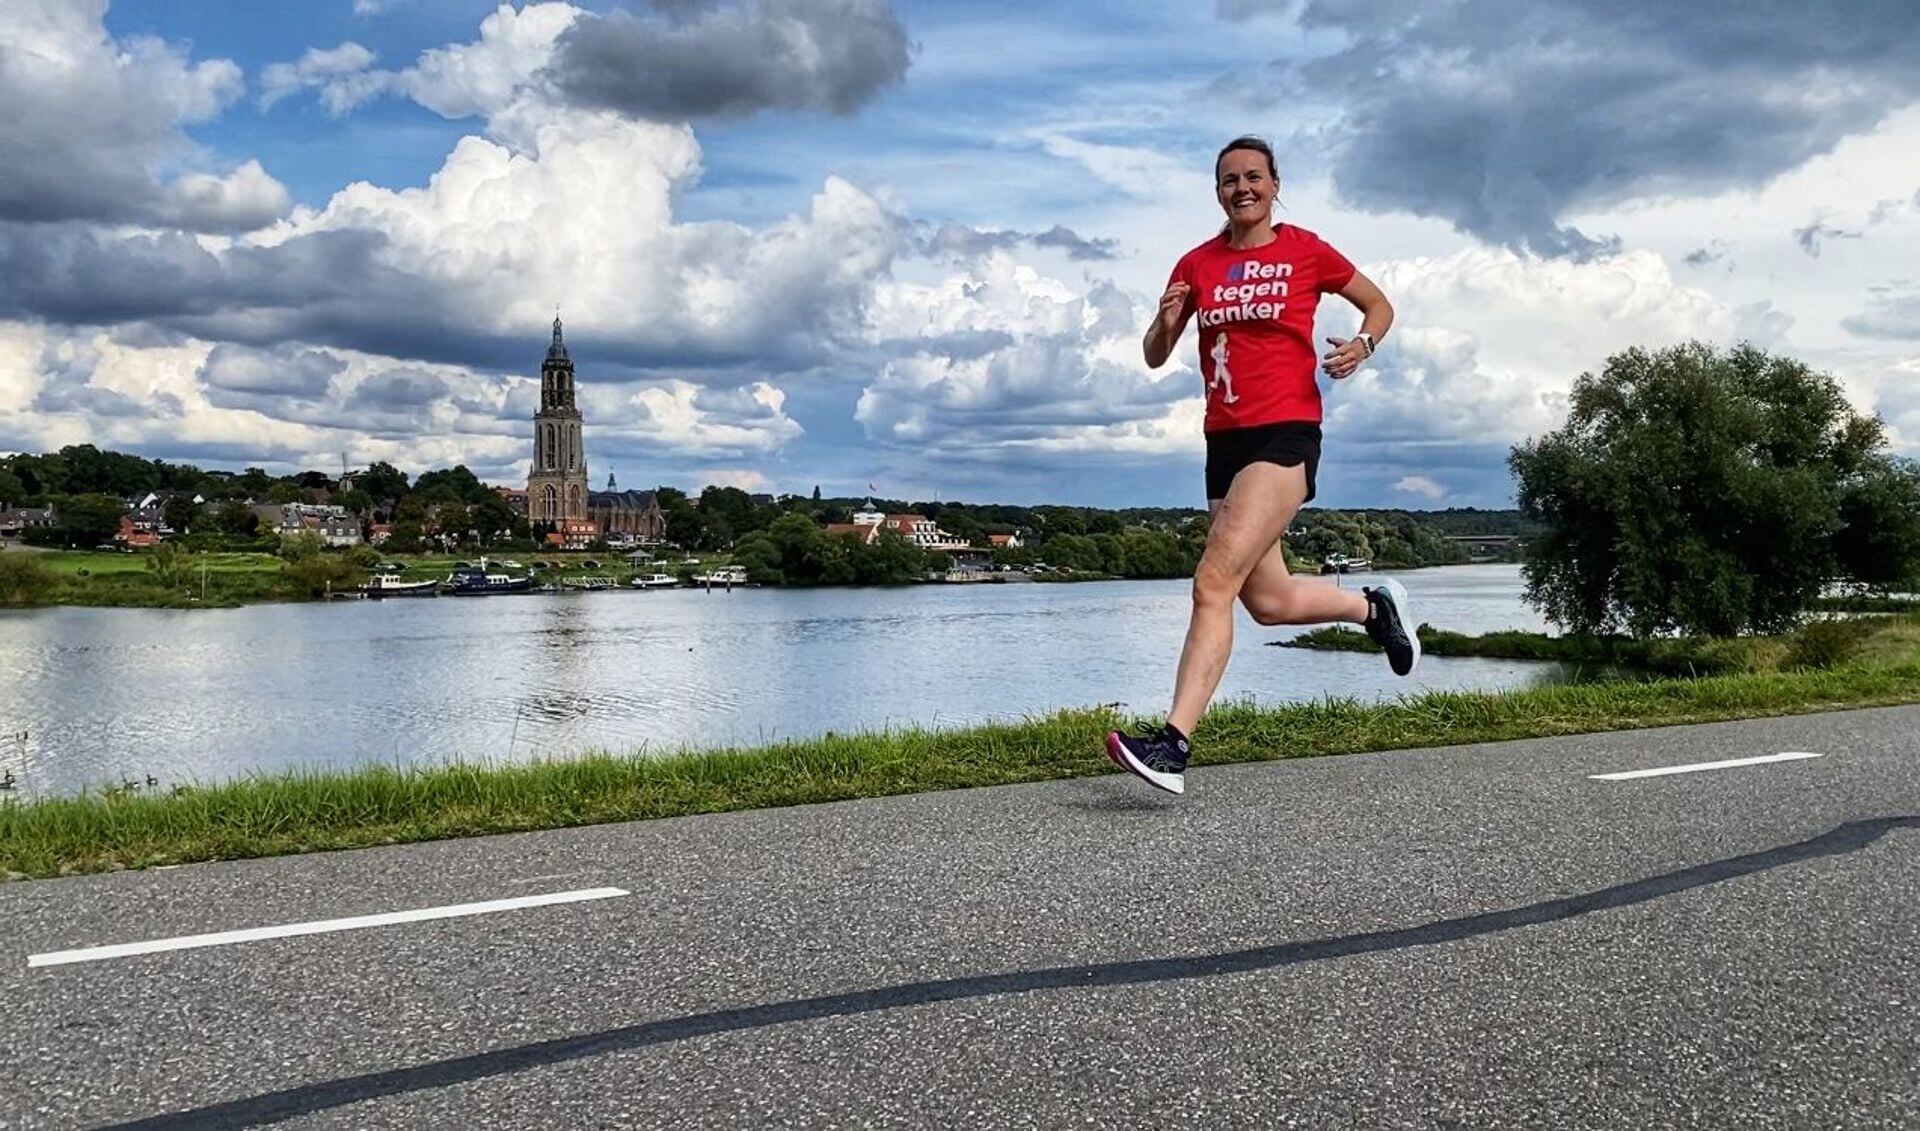 Siska Groen-van Wamel al trainend op de Betuwse dijken voor de marathon tegen kanker. 